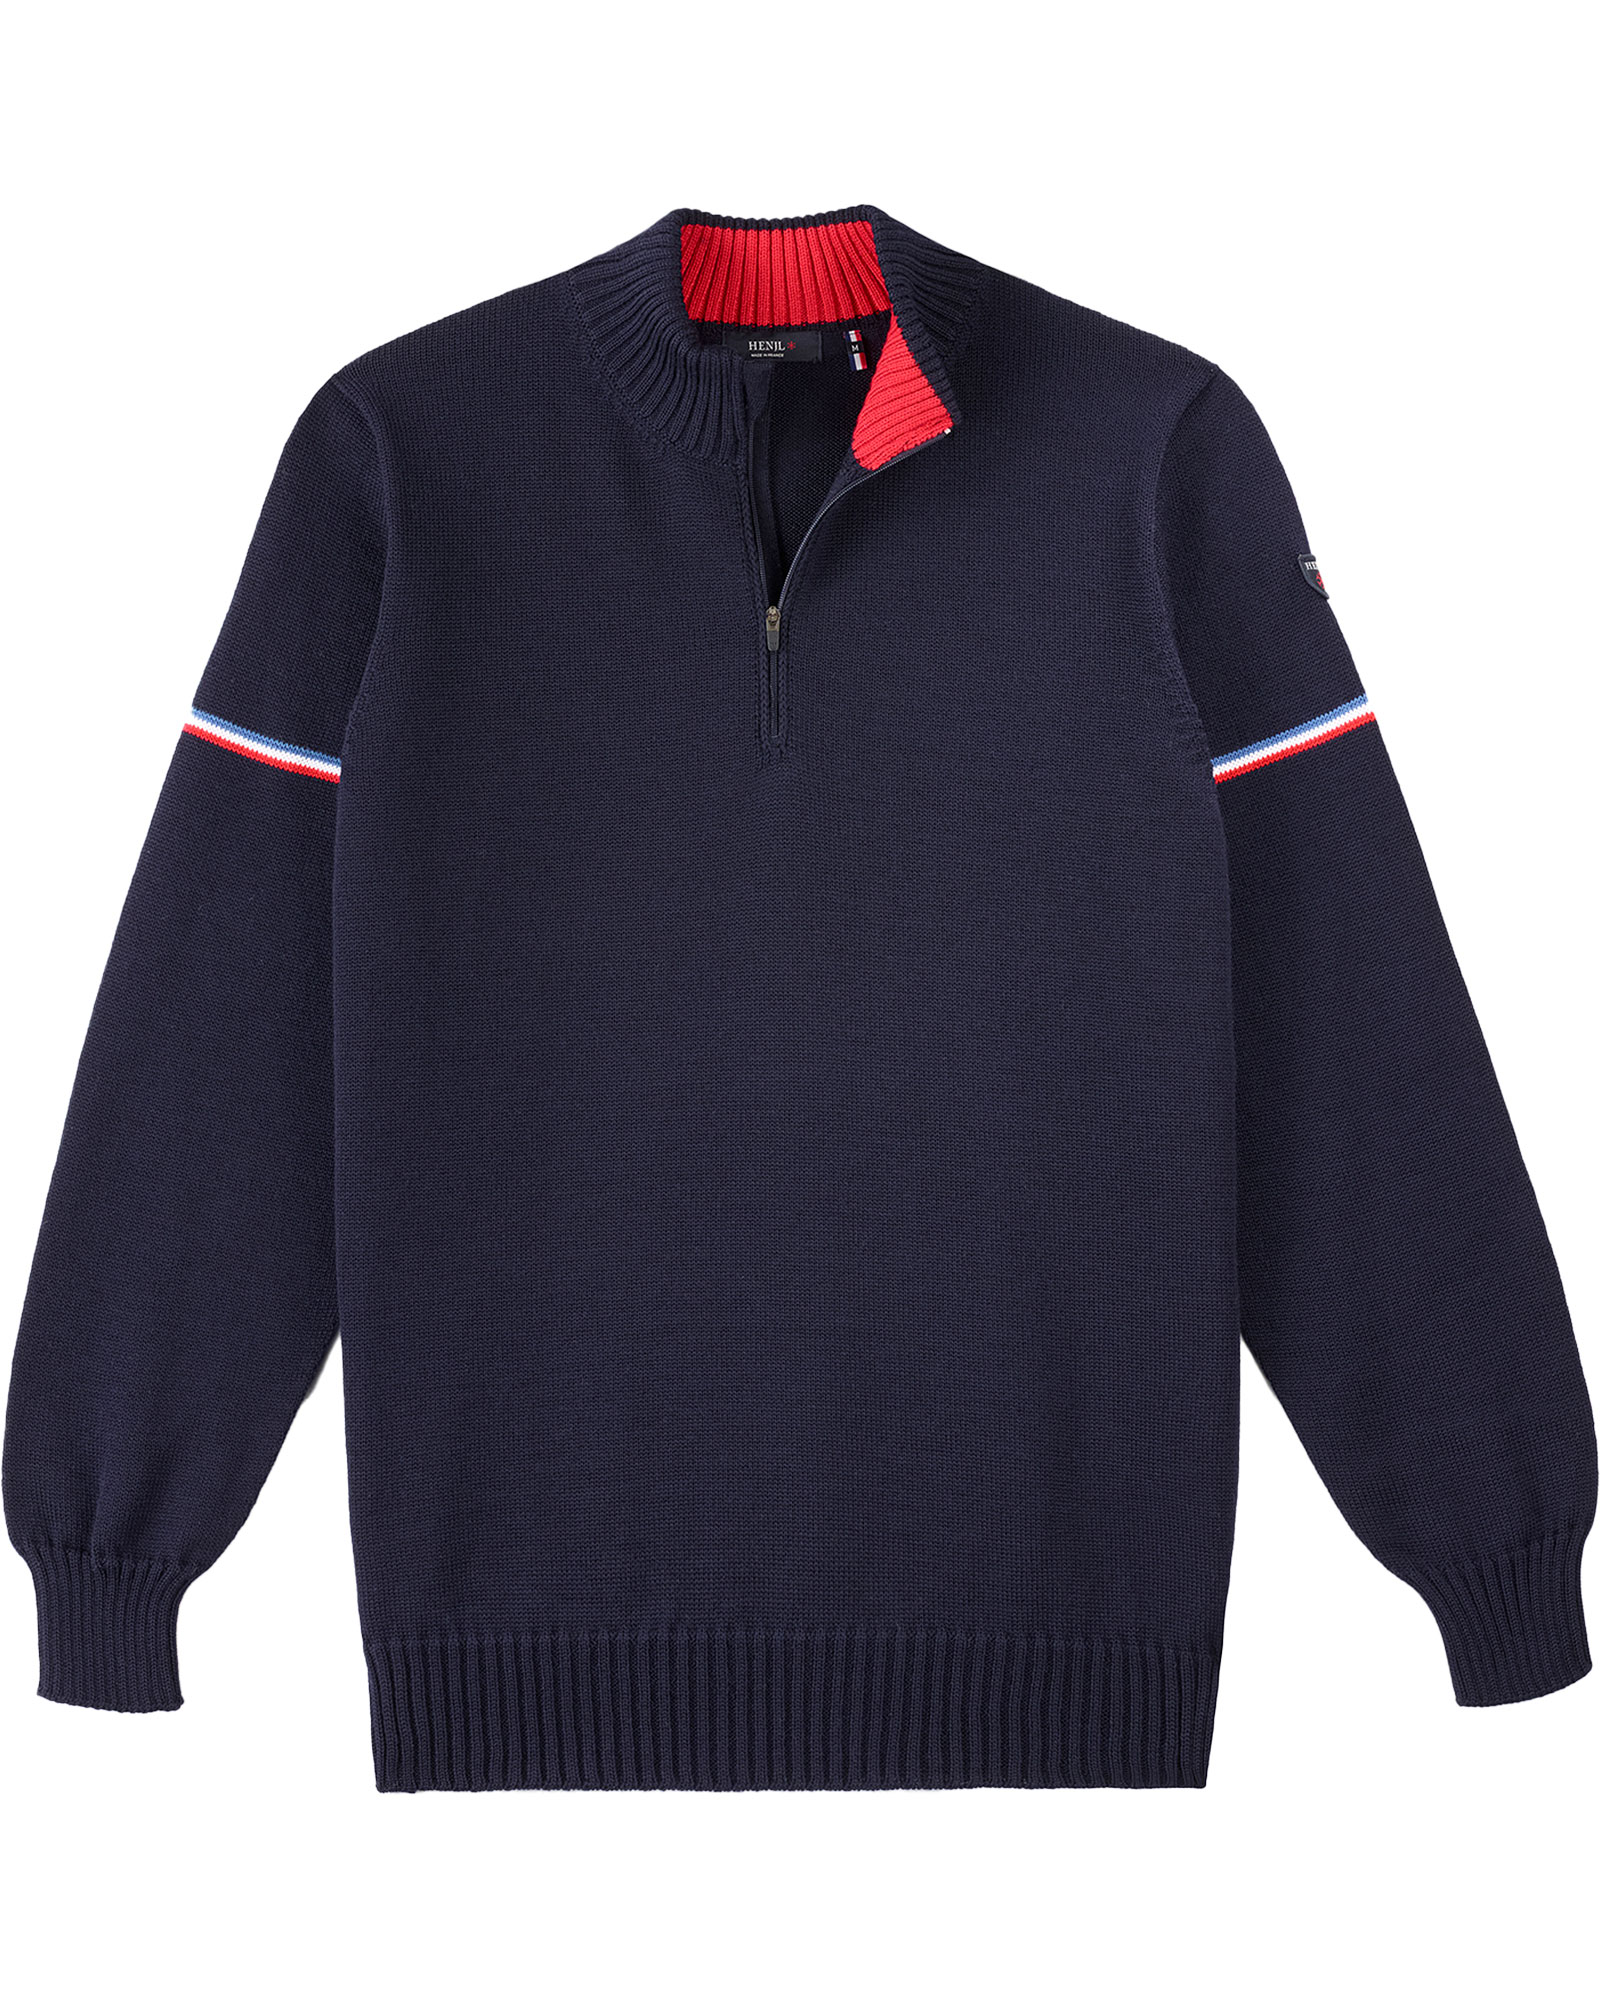 Henjl Men’s Dixon Sweater - Navy M